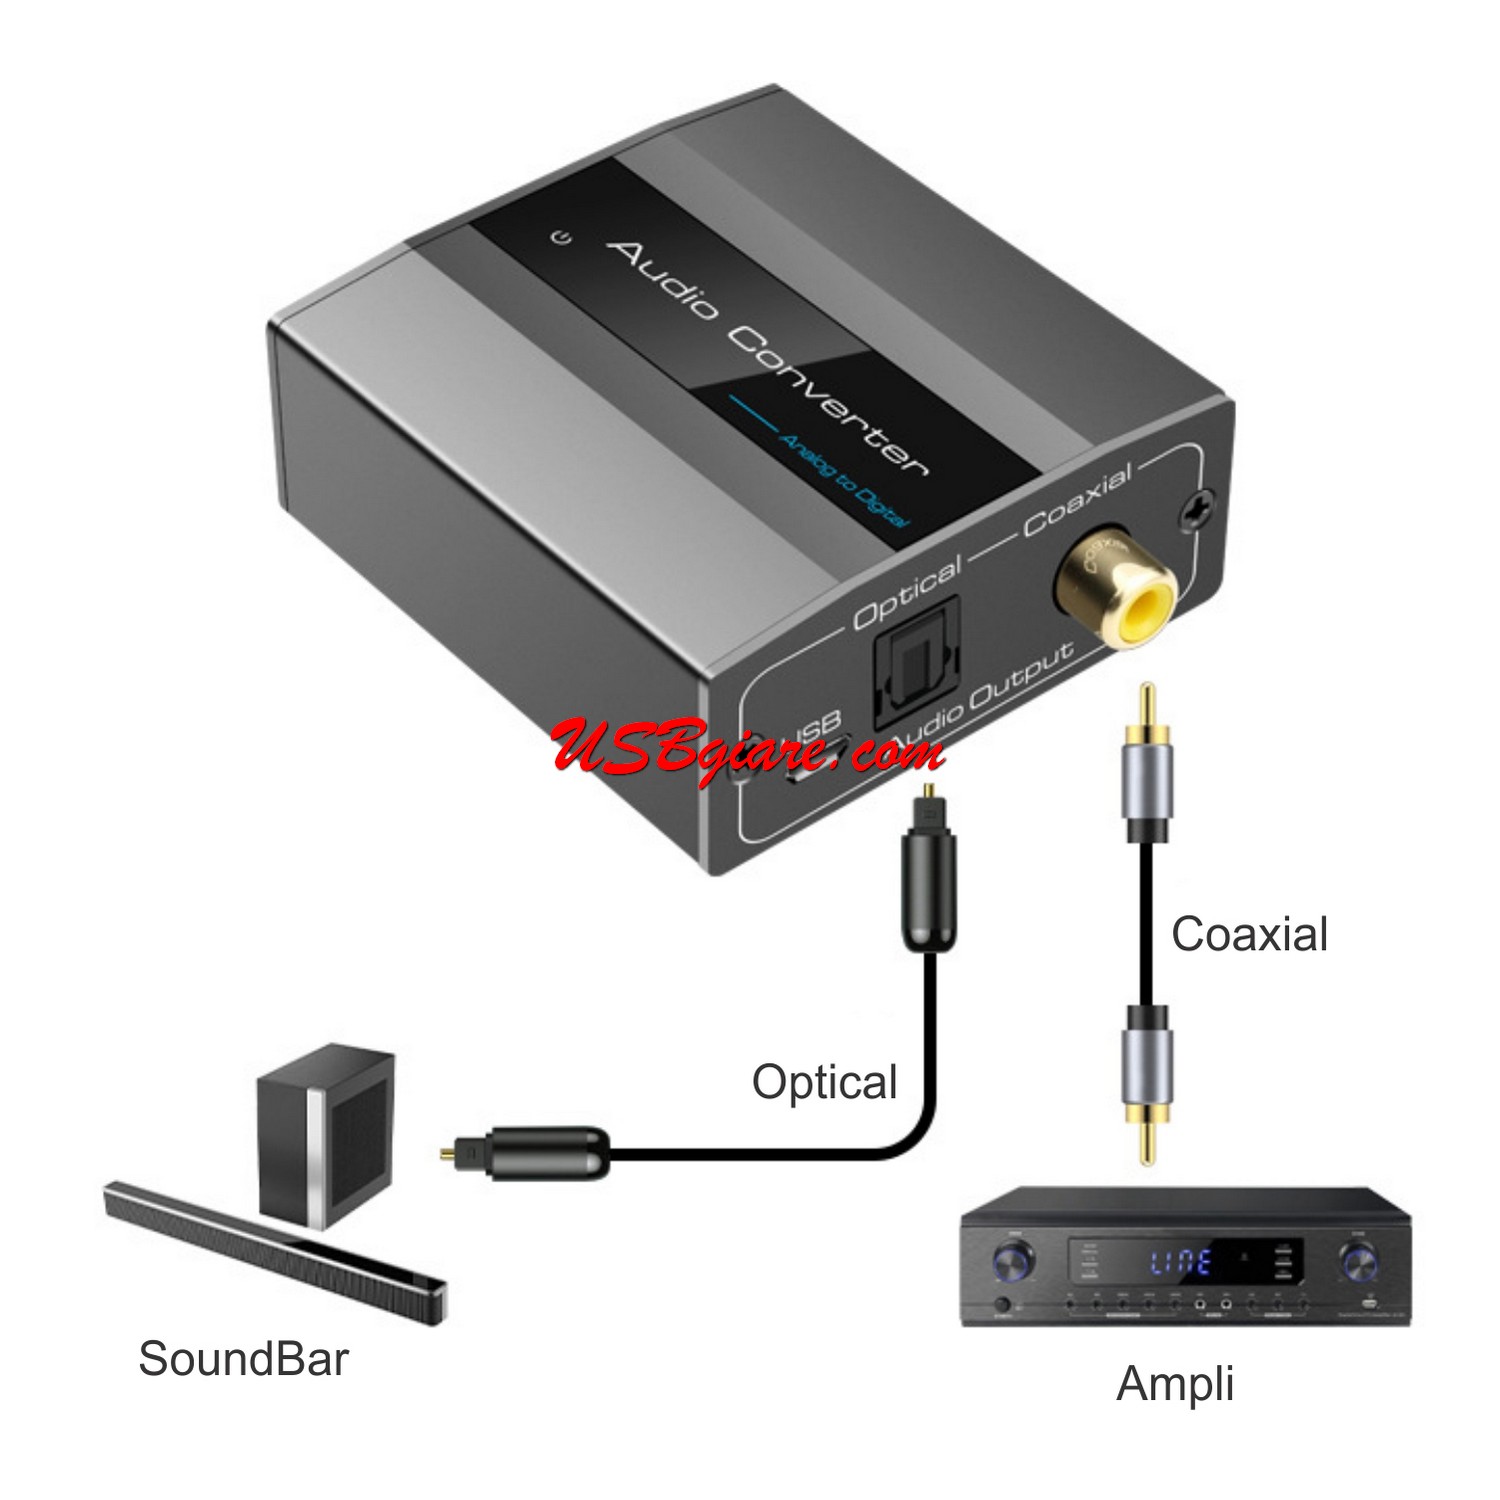 Bộ chuyển đổi âm thanh 3.5mm / RCA sang Optical / Coaxial - Analog to Digital converter cao cấp VP-1003A